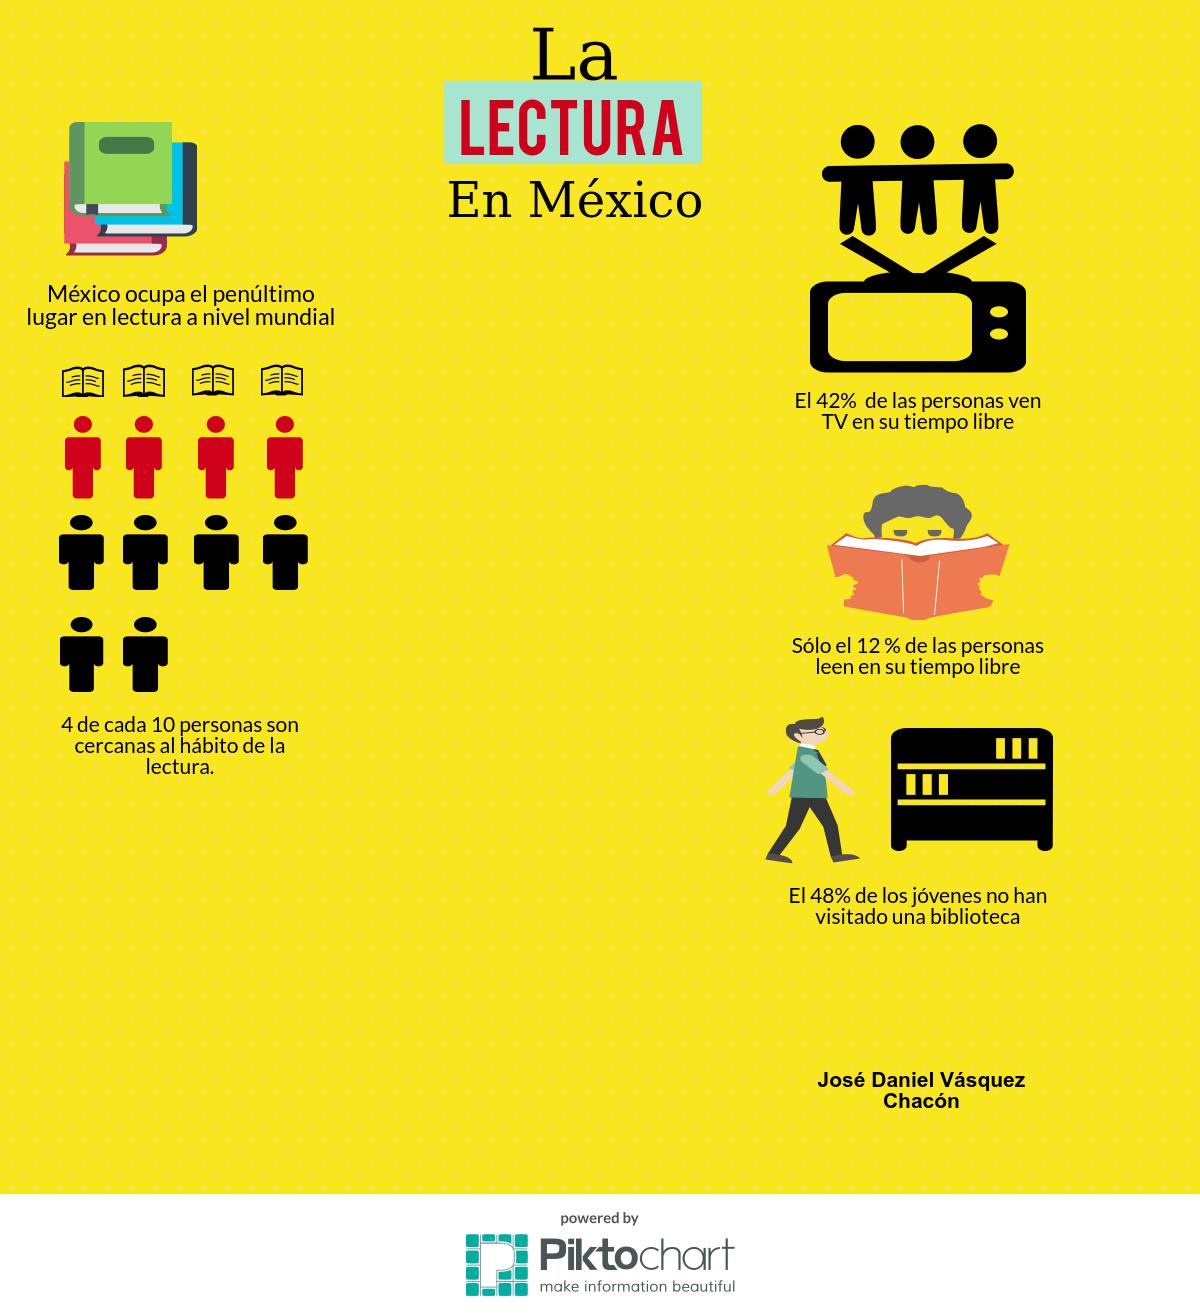 ¿Cómo la tecnología influye en la calidad y cantidad de lectura en México?